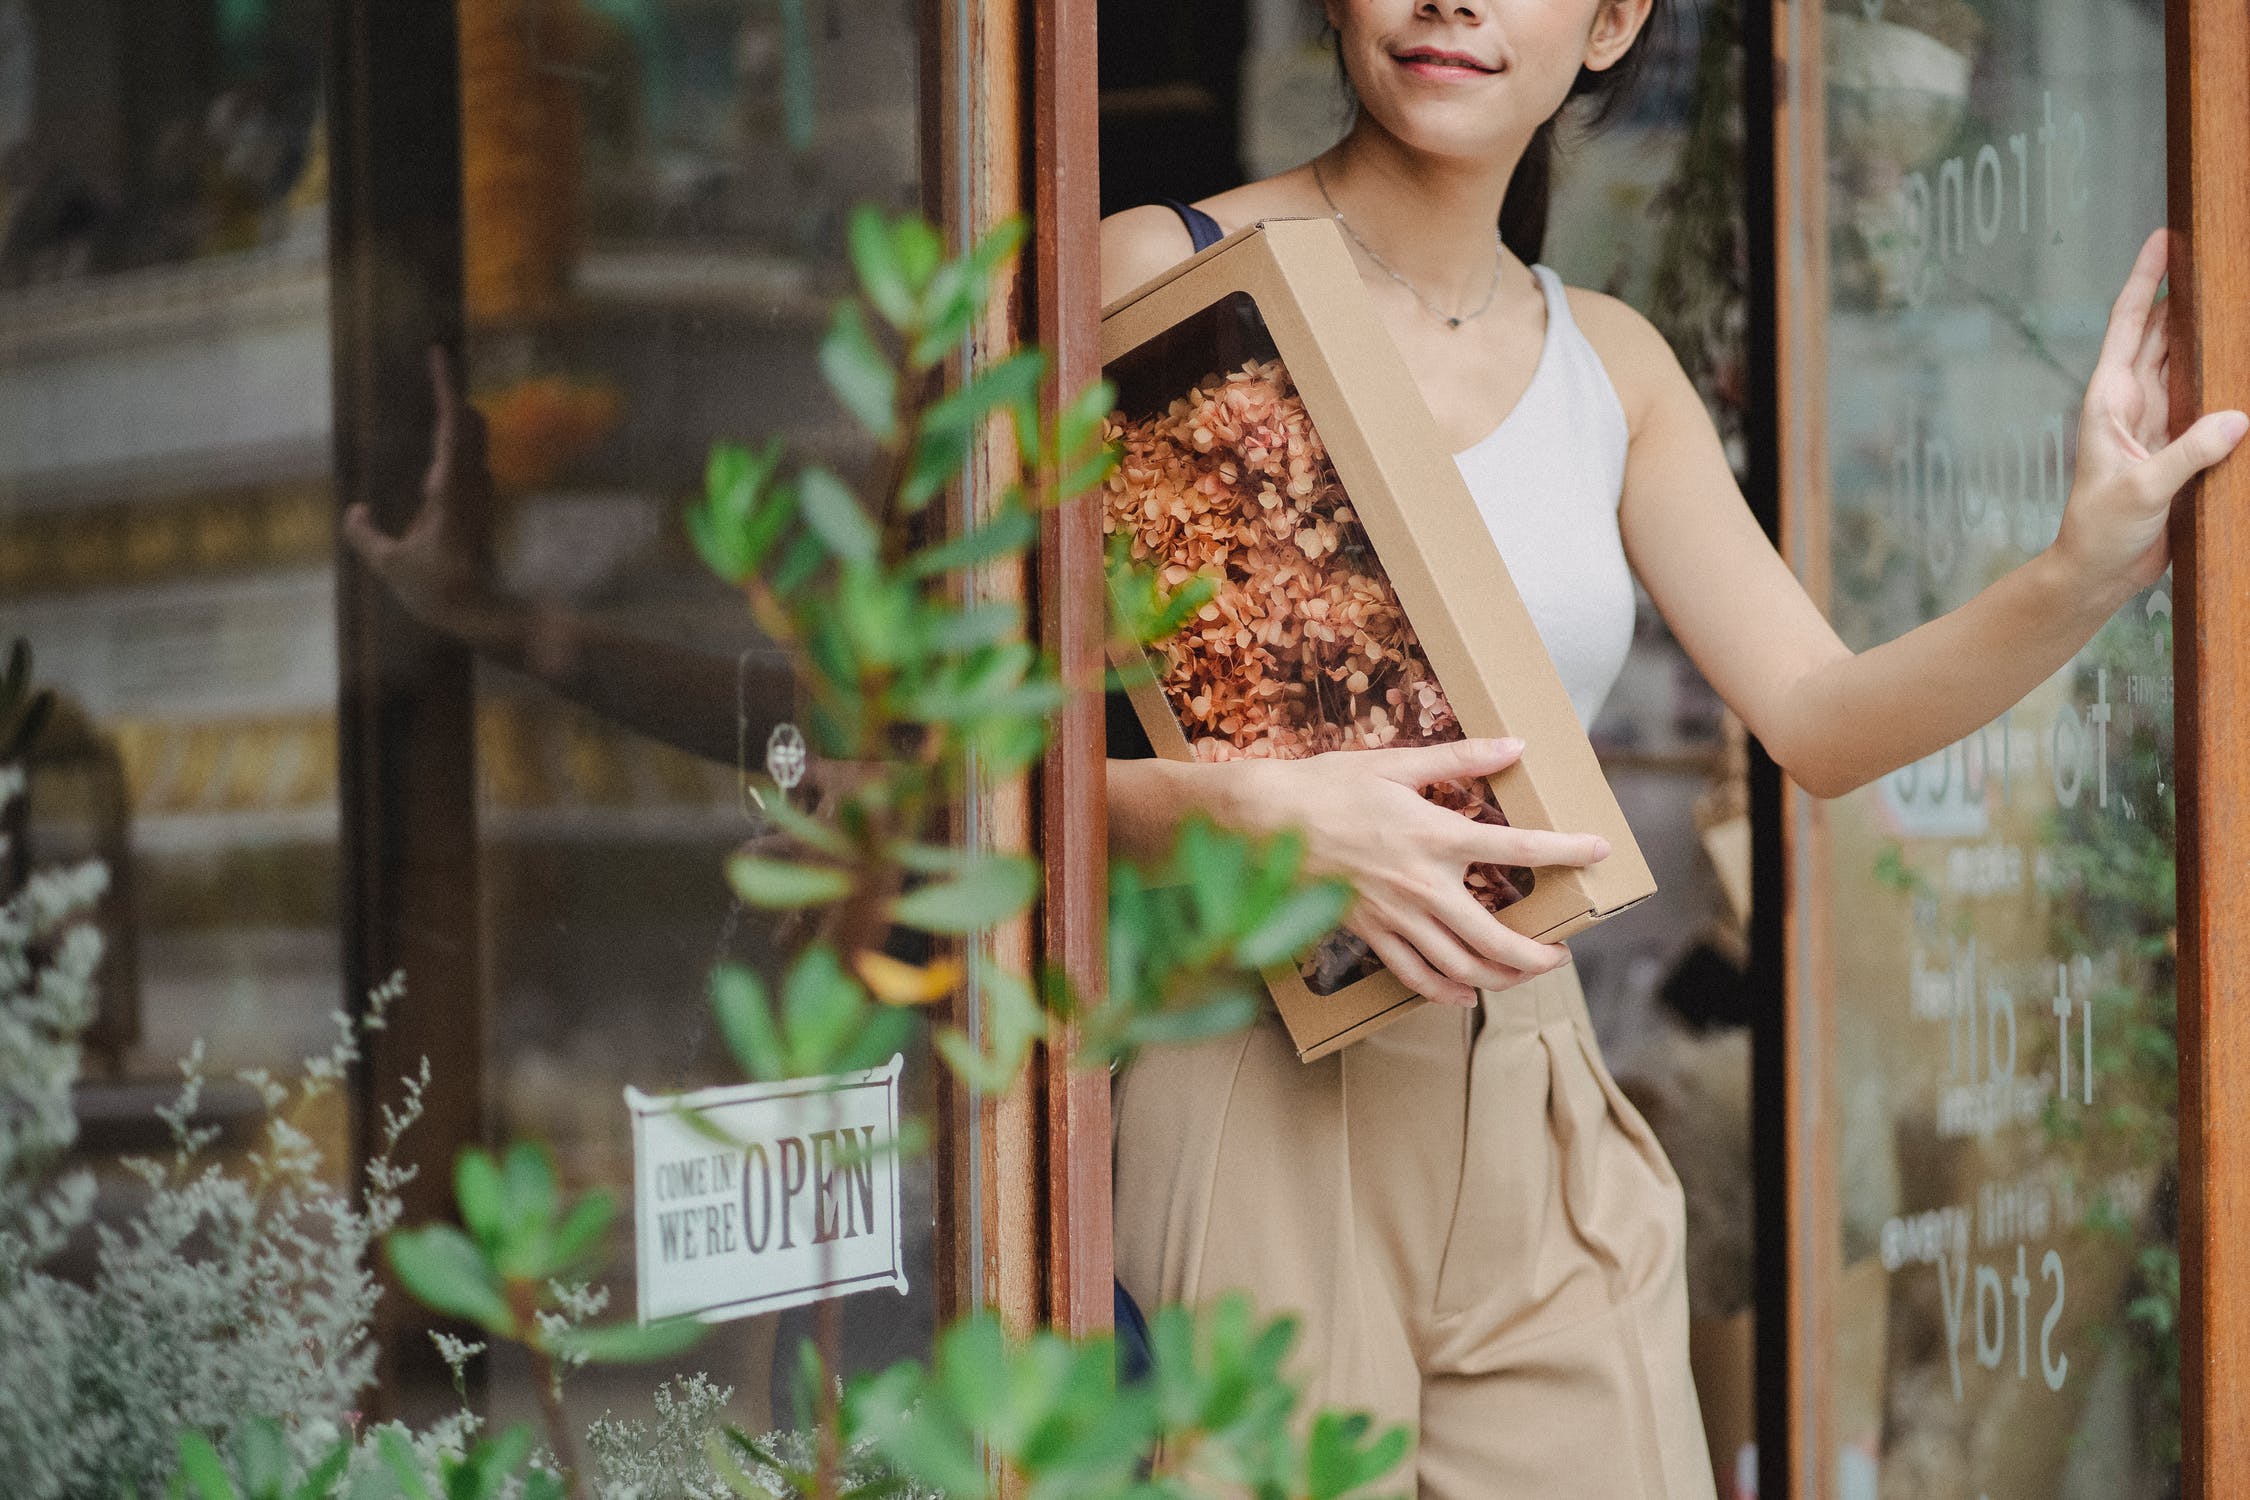 La imagen muestra una mujer con flores secas en la mano saliendo de una floristería abriendo la puerta. 